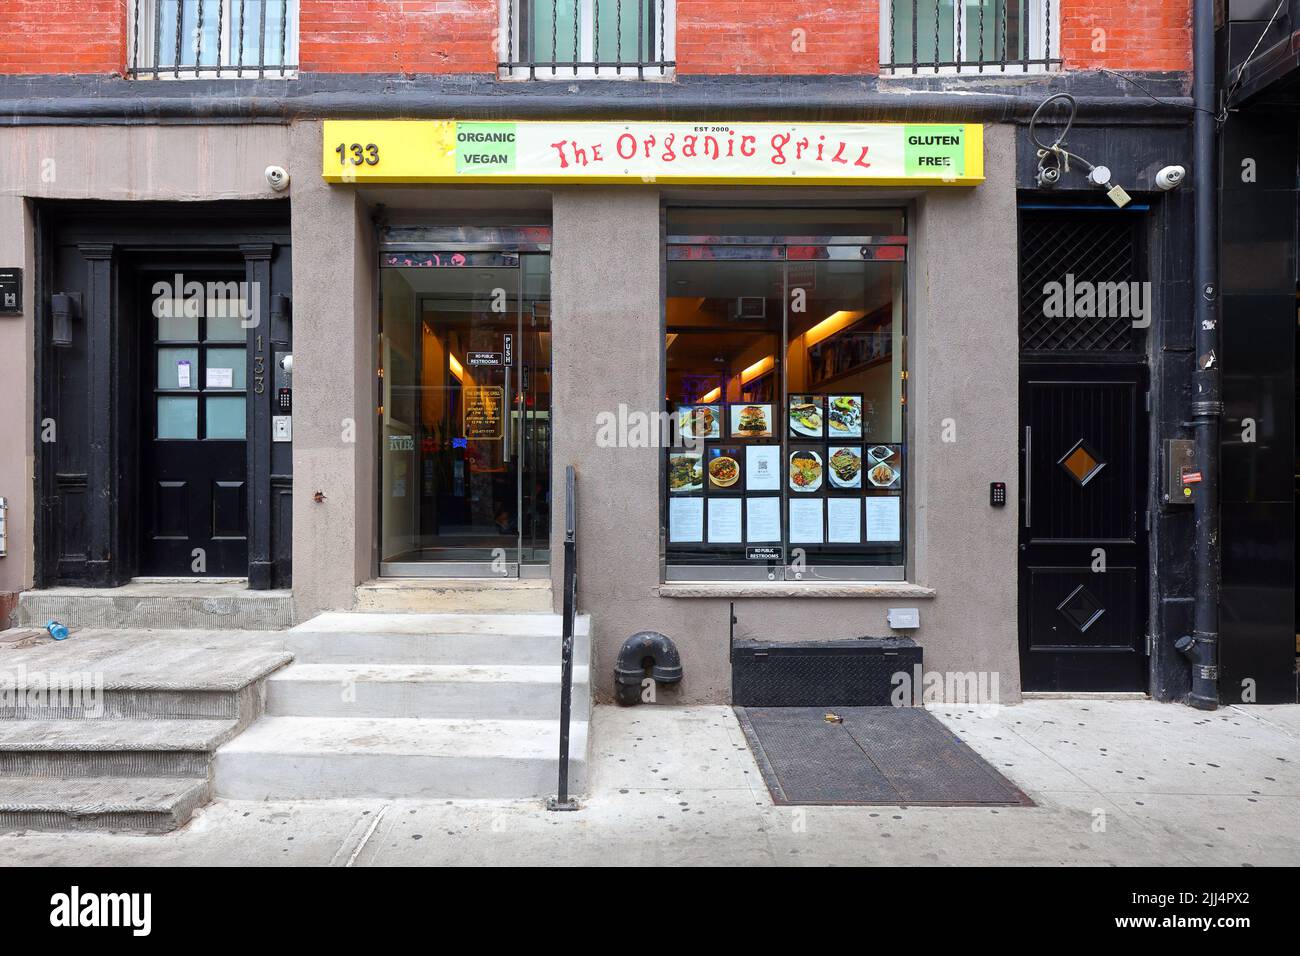 The Organic Grill, 133 W 3. St, New York, NYC Foto von einem veganen, biologischen, glutenfreien Restaurant in Manhattans Greenwich Village Stockfoto